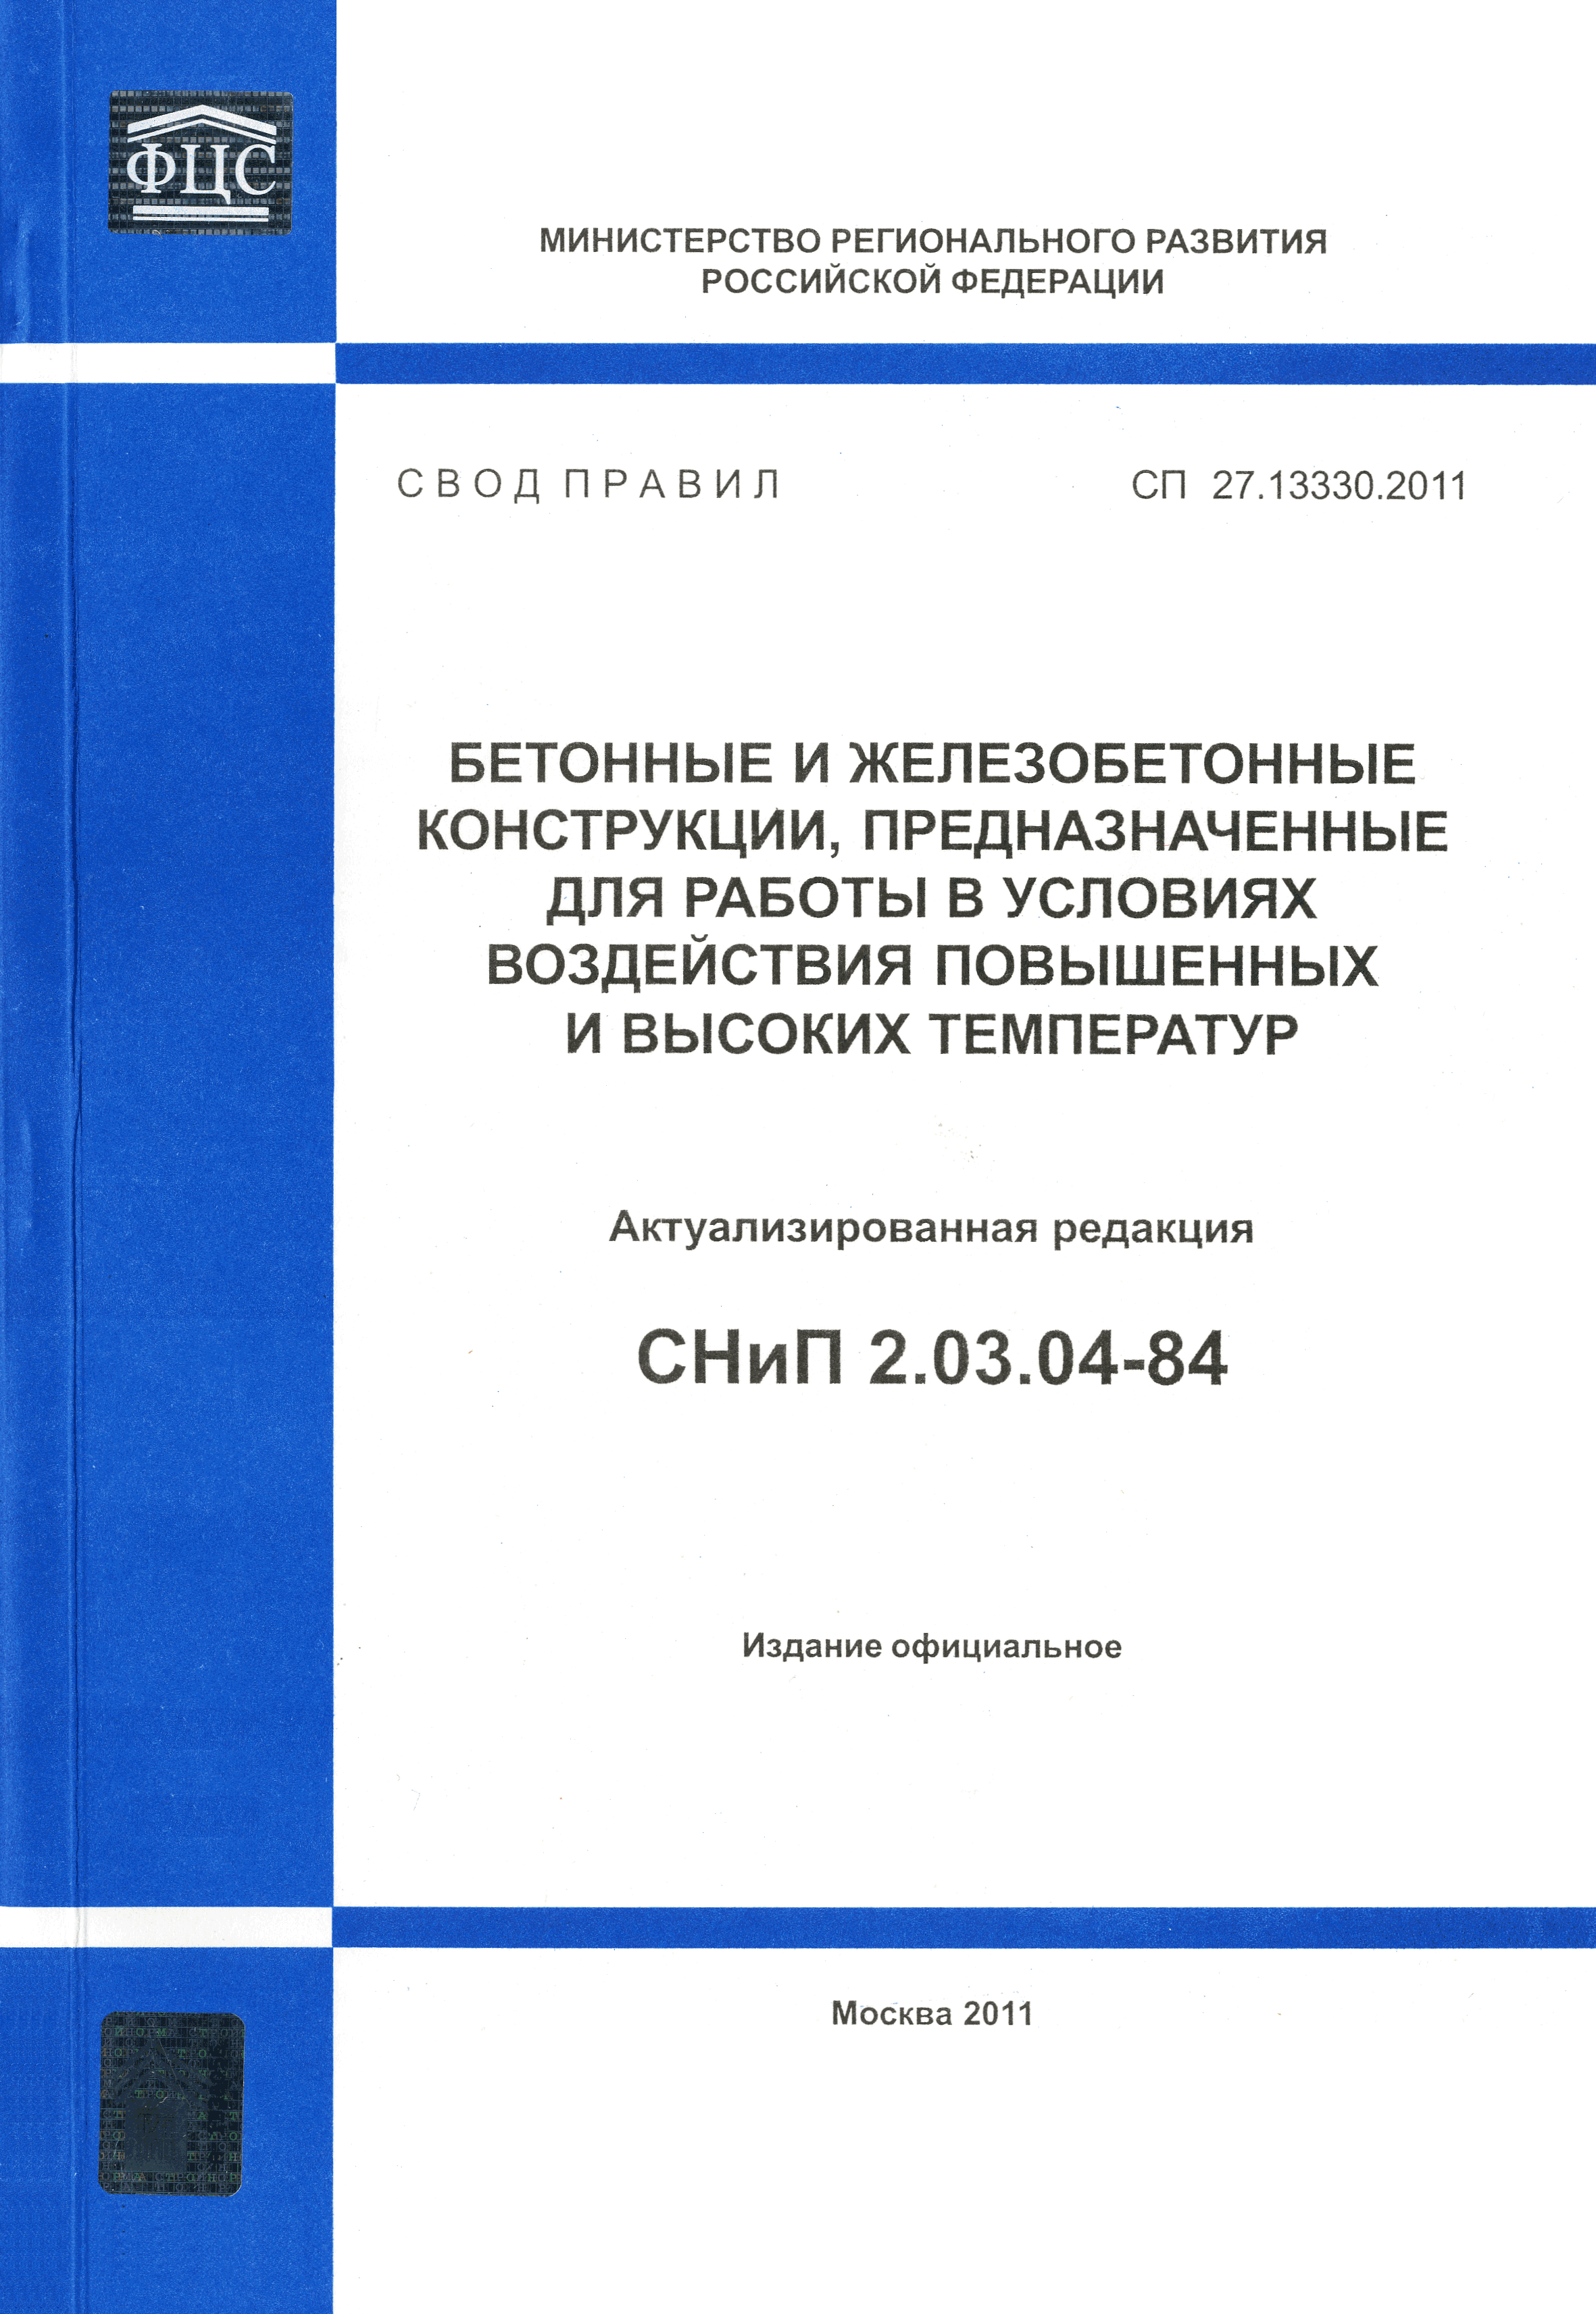 СП 27.13330.2011